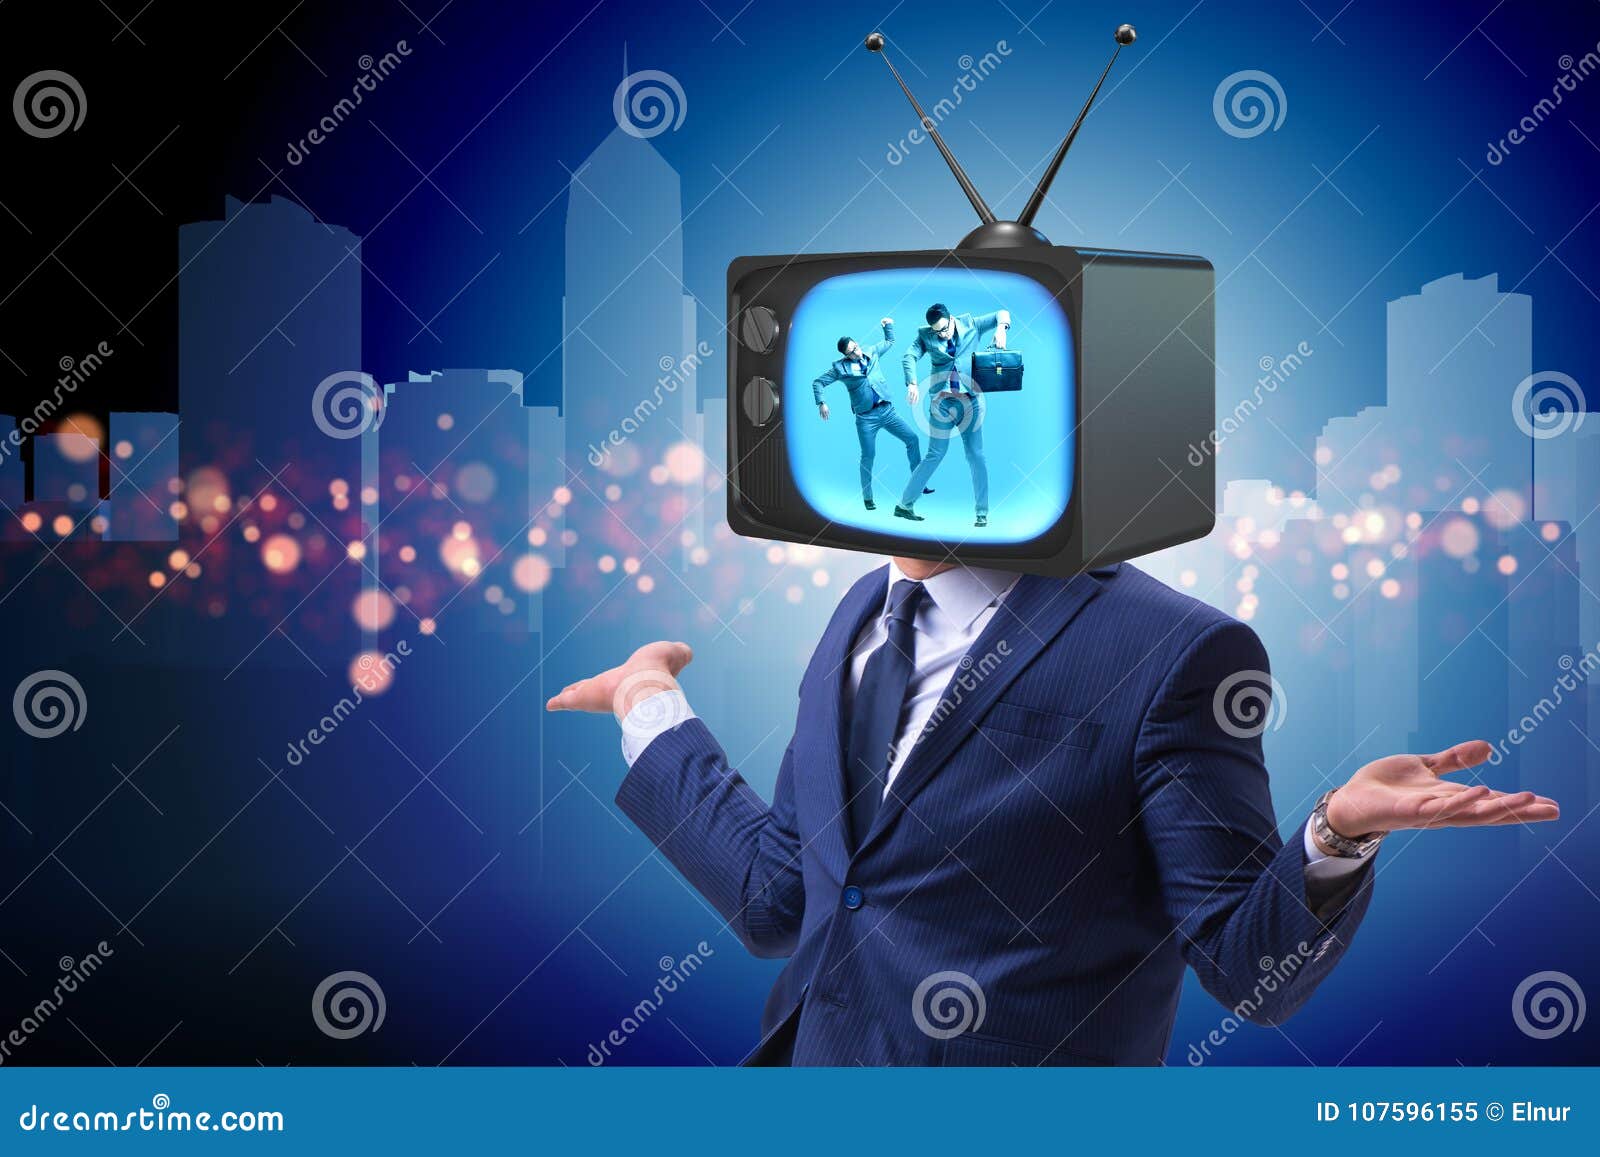 Mewing tv man. Человек телевизор. Человек рекламирующий телевизор. Телевизор мен. Реклама телевизоров с людьми.